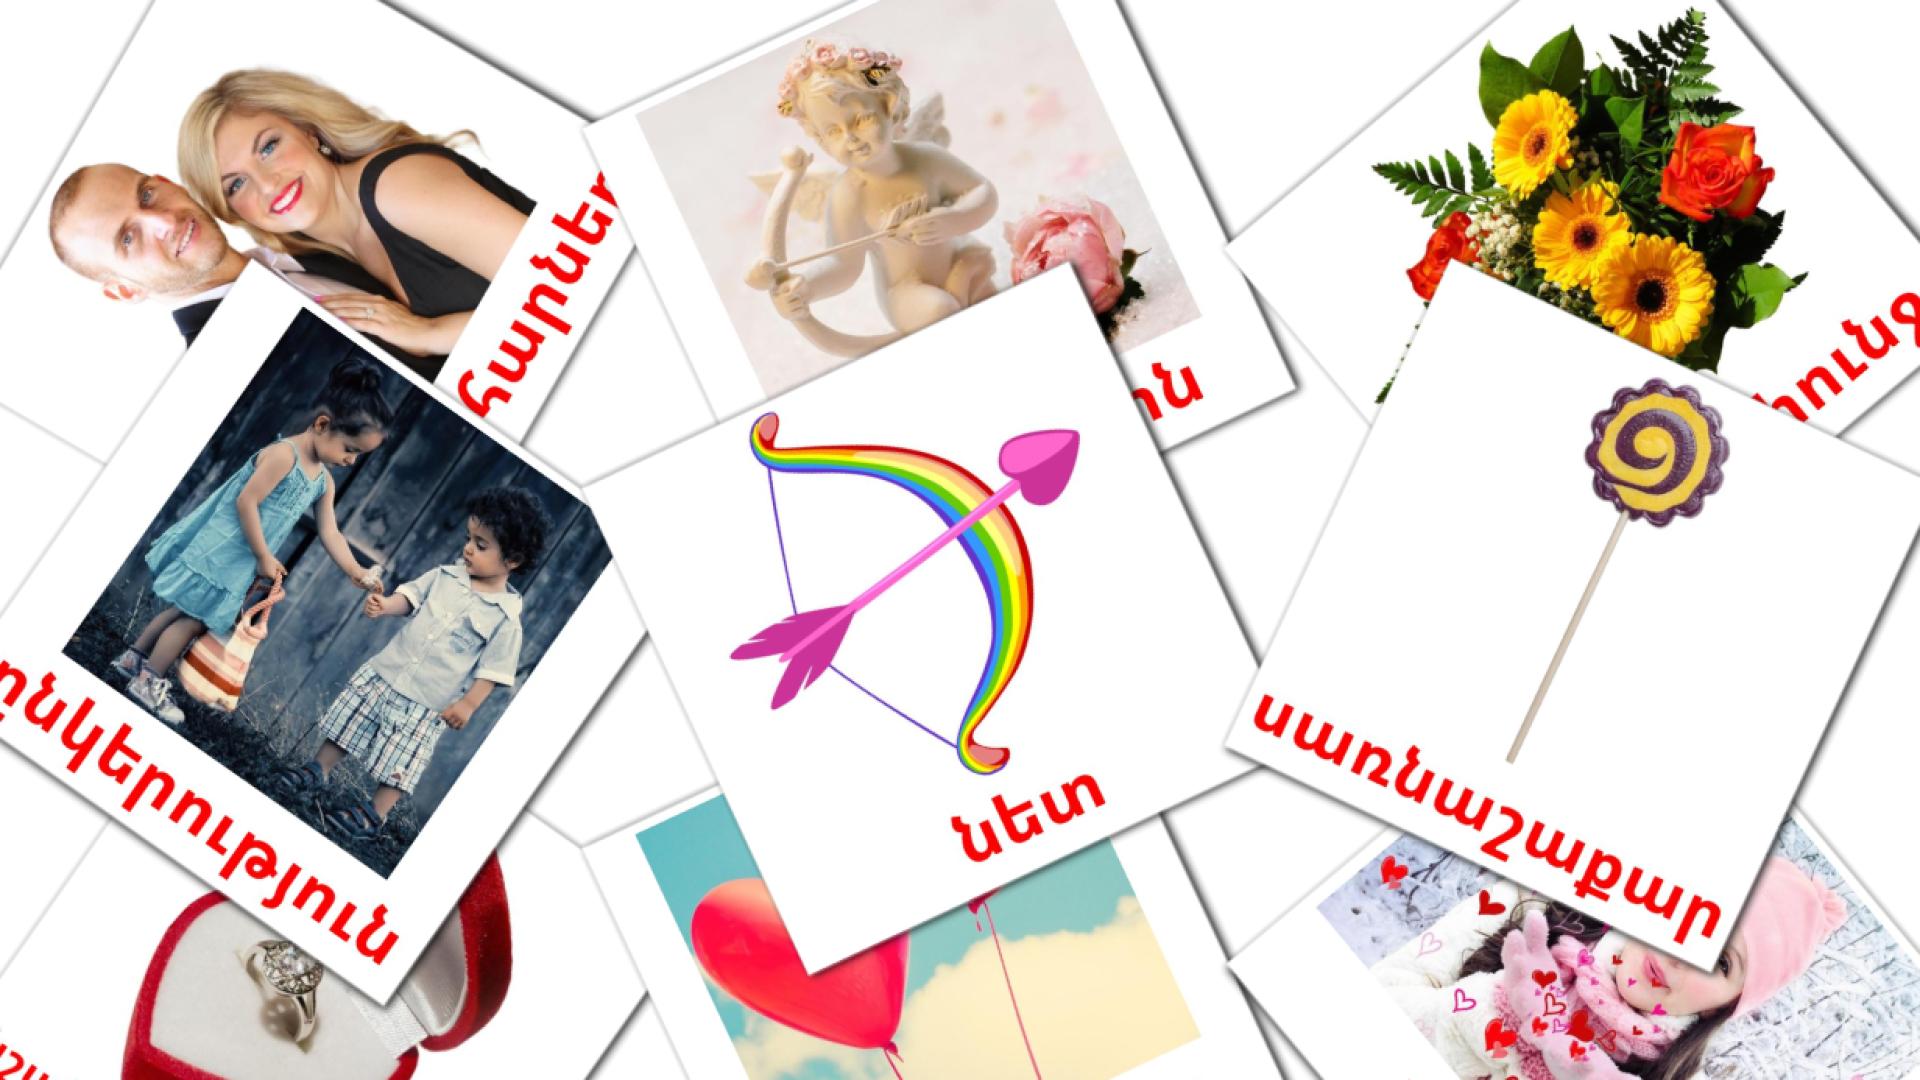 Valentijnsdag - armeensee woordenschatkaarten